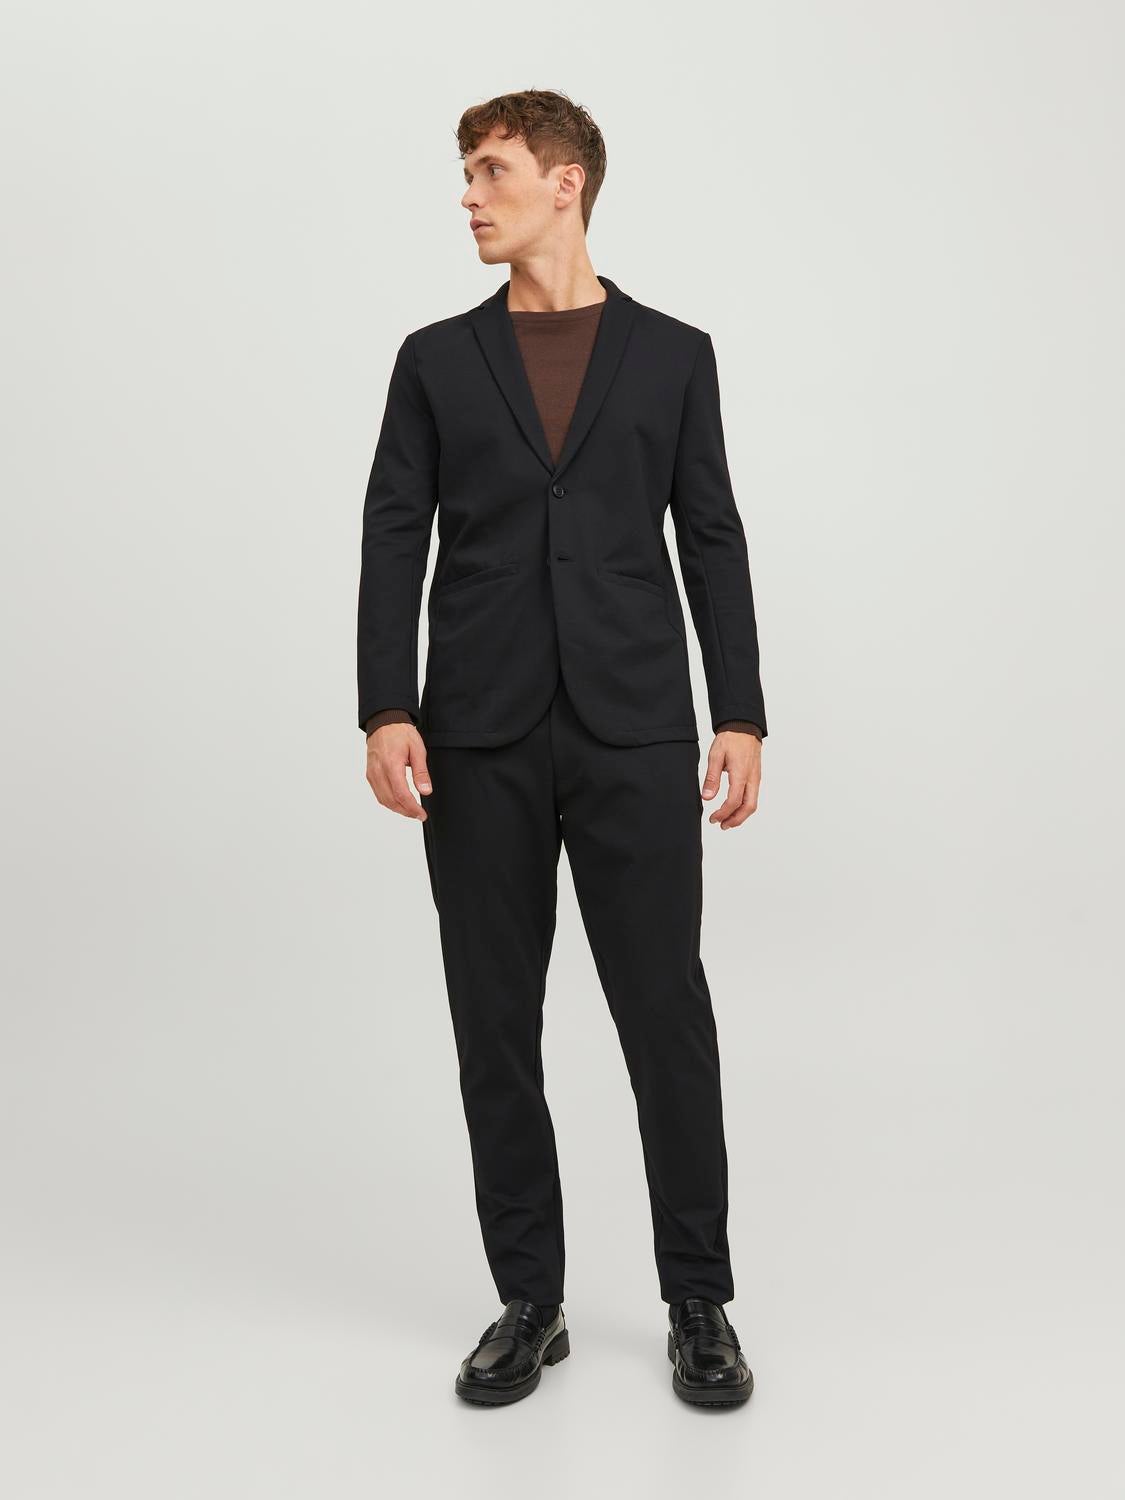 Men's Suits | 3 Piece in Black, Navy Blue & More | JACK & JONES